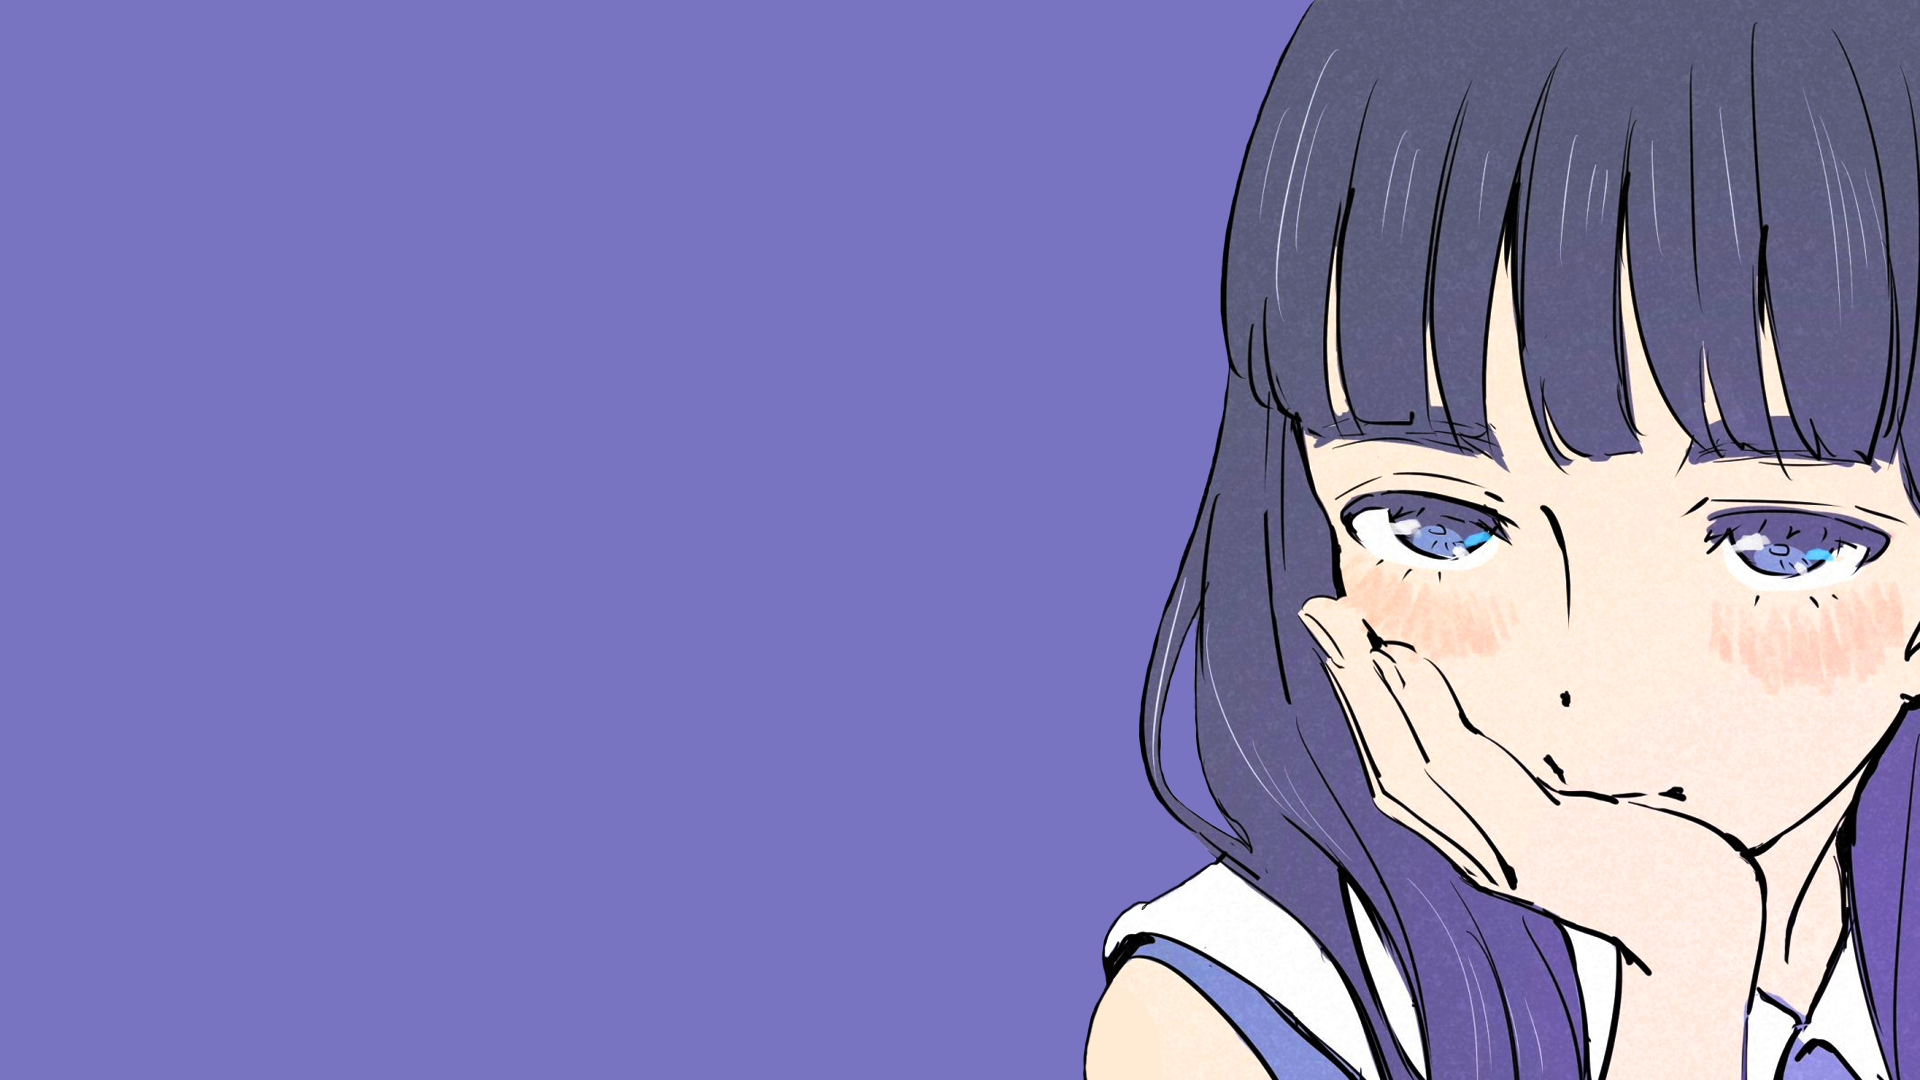 Anime 1920x1080 anime manga anime girls purple purple hair simple background purple background schoolgirl minimalism